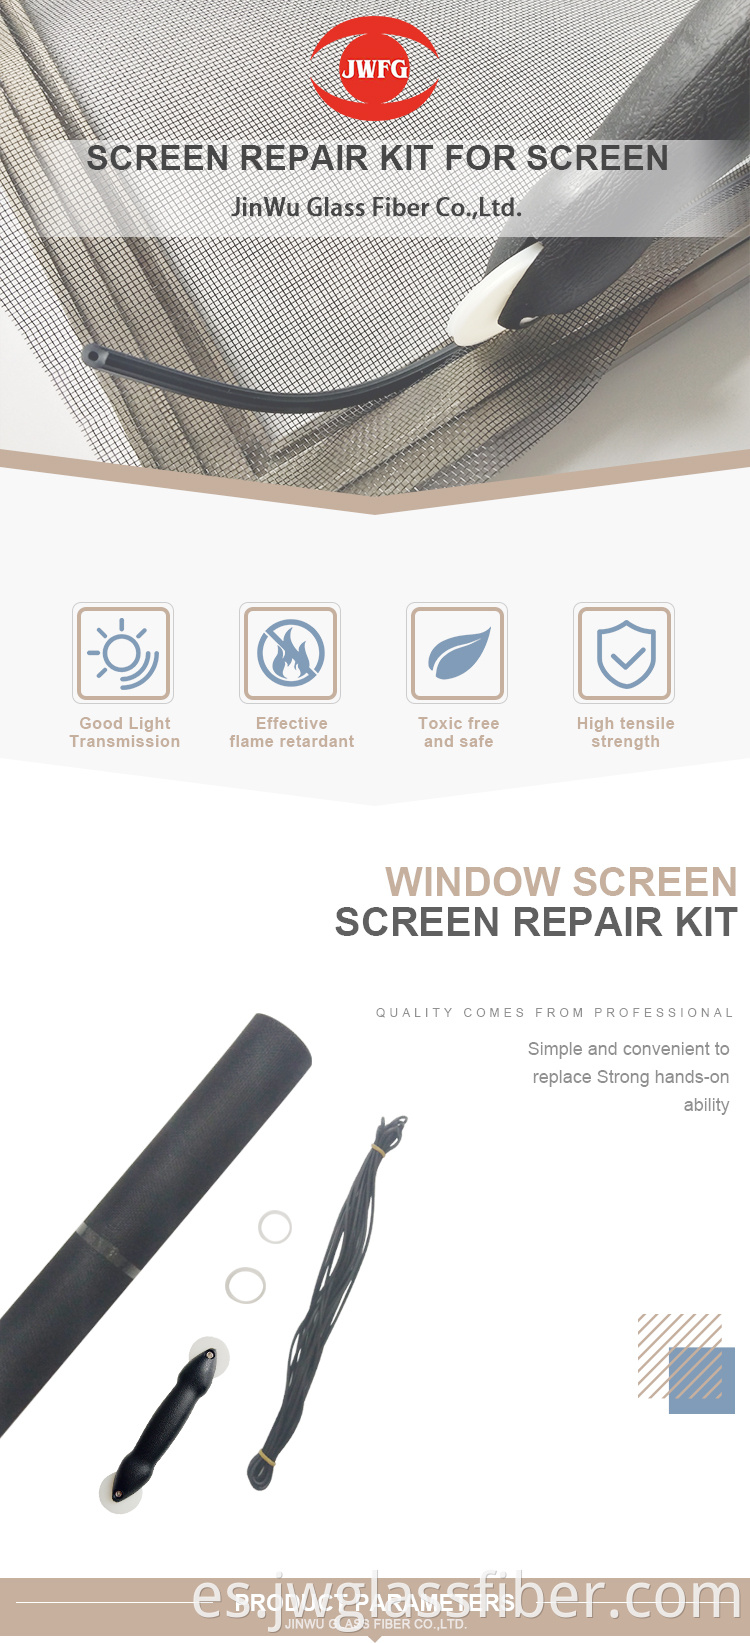 Traje de bricolaje a tamaño correcto para el kit de reparación de la pantalla de ventana y puerta